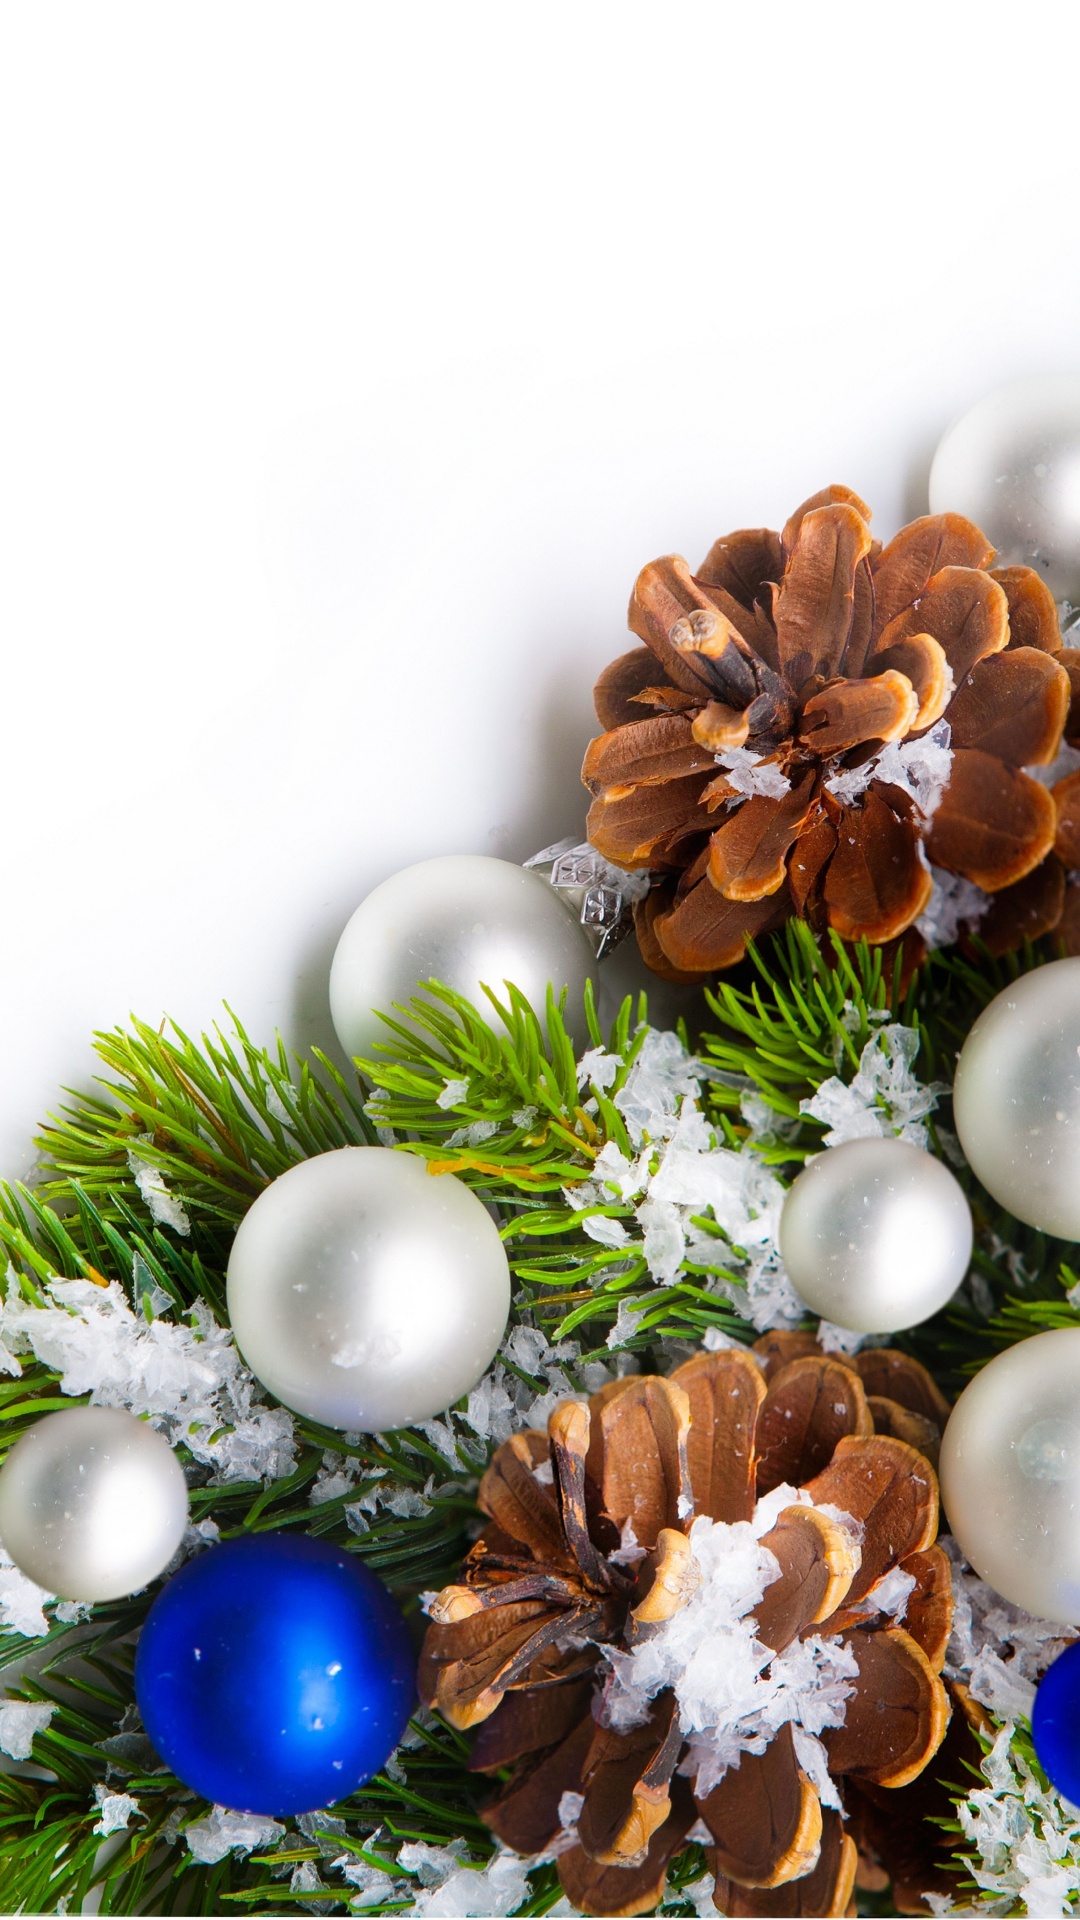 Weihnachten, Neujahr, Weihnachtsdekoration, Christmas Ornament, Baum. Wallpaper in 1080x1920 Resolution